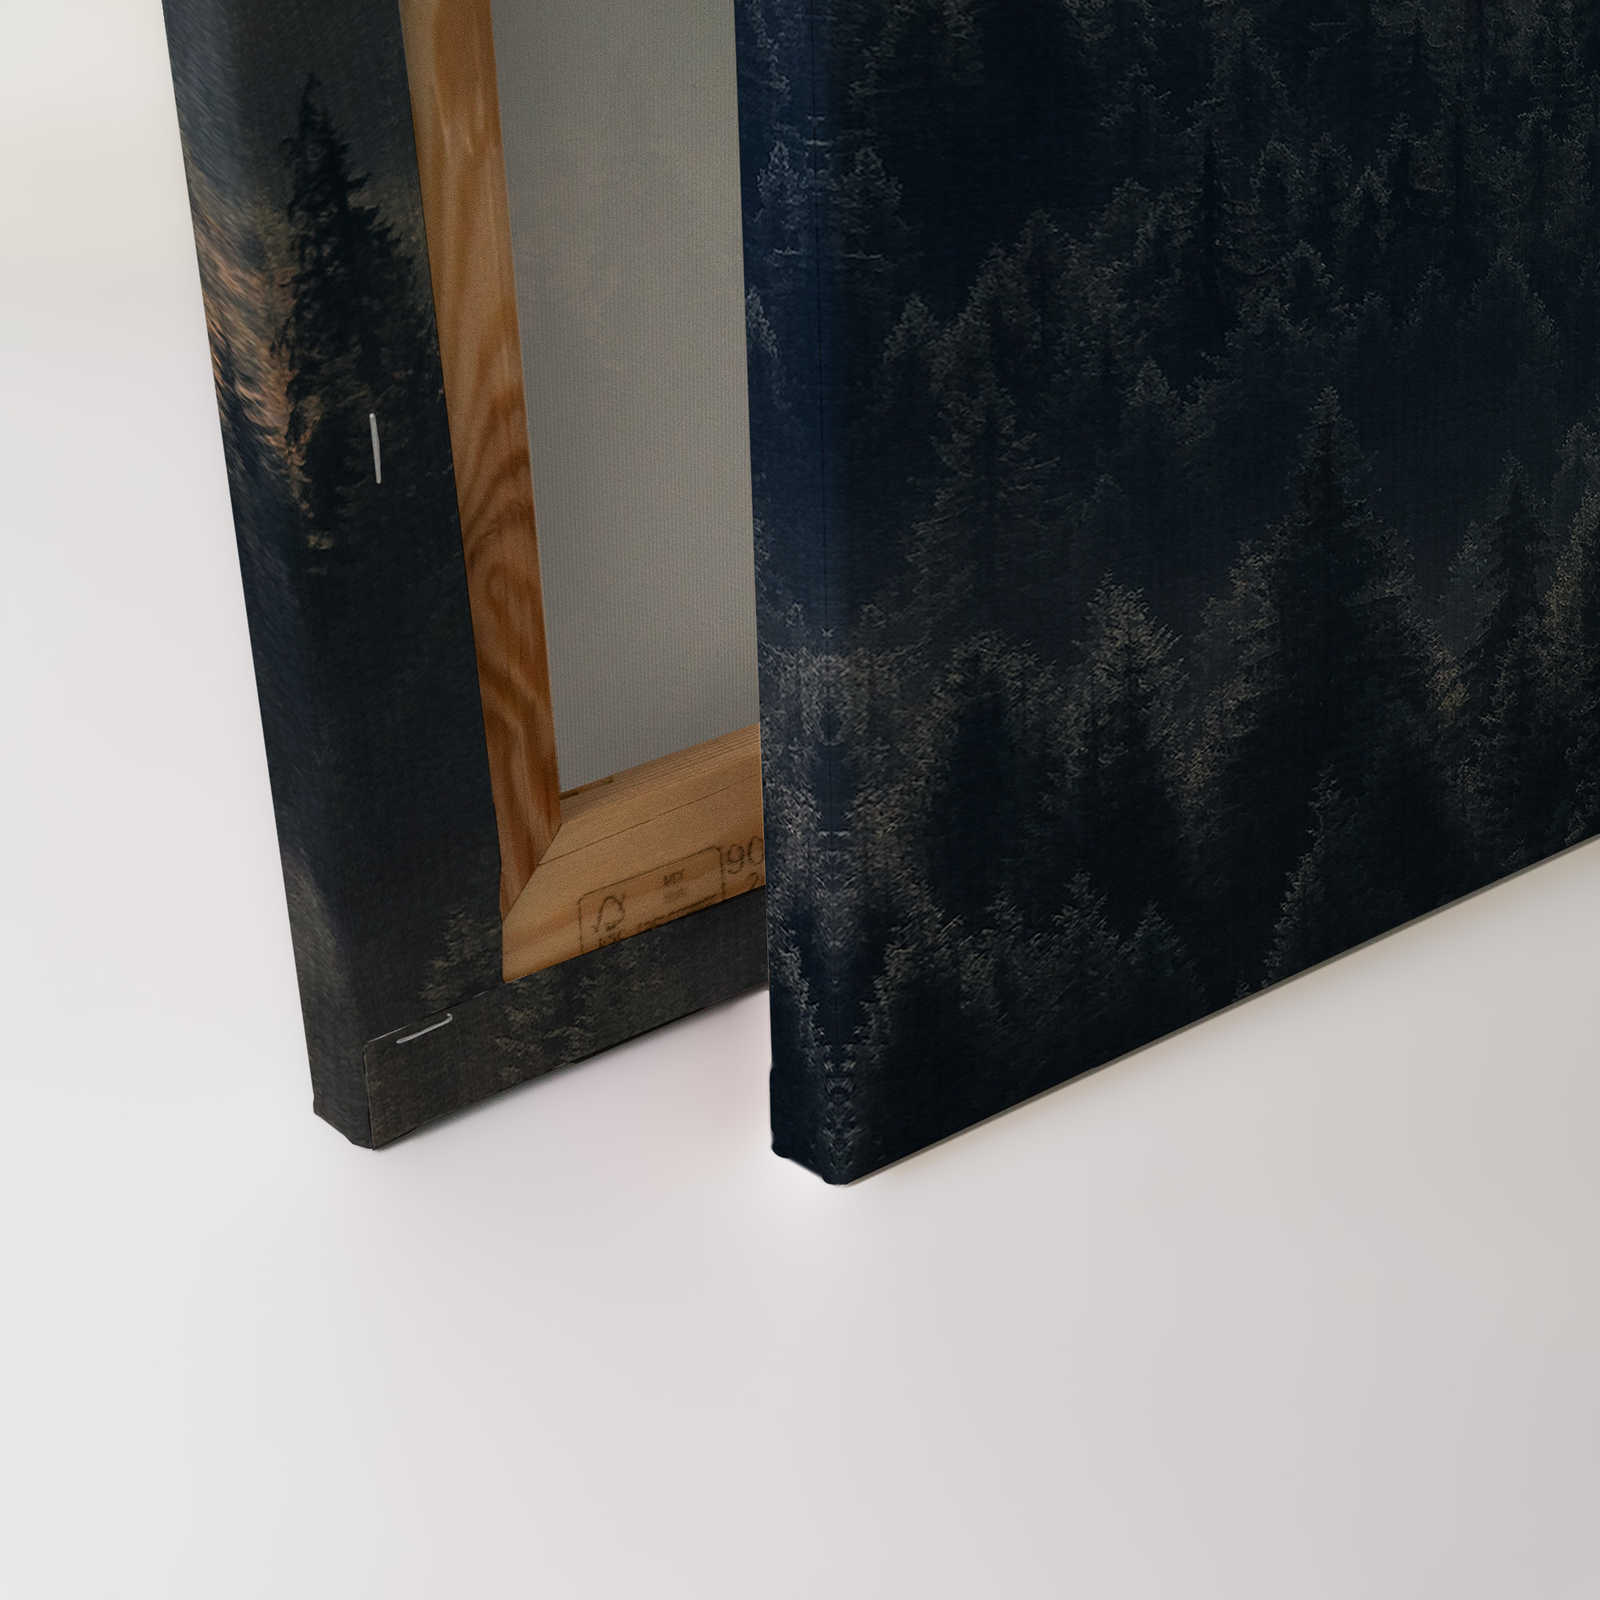             Tableau toile avec paysage de forêt sur toile aspect structuré - 0,90 m x 0,60 m
        